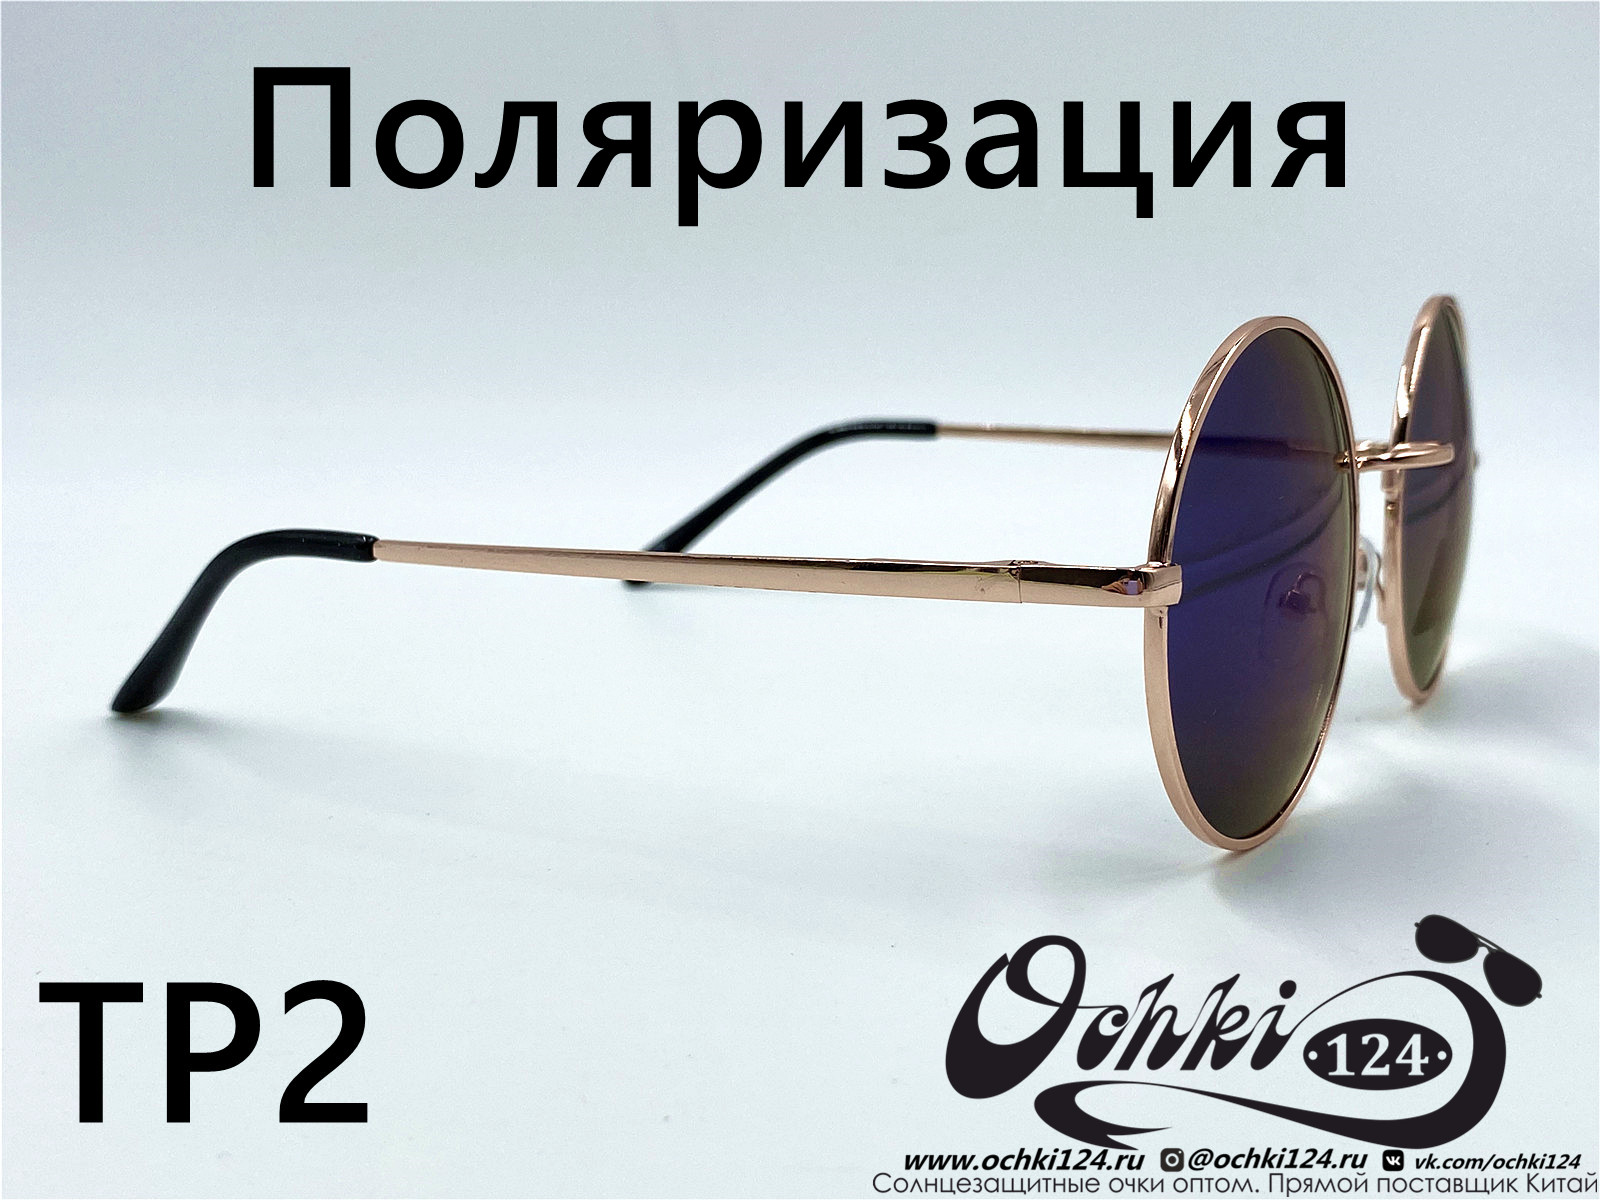  Солнцезащитные очки картинка 2022 Мужские Поляризованные Круглые KaiFeng TP2-5 